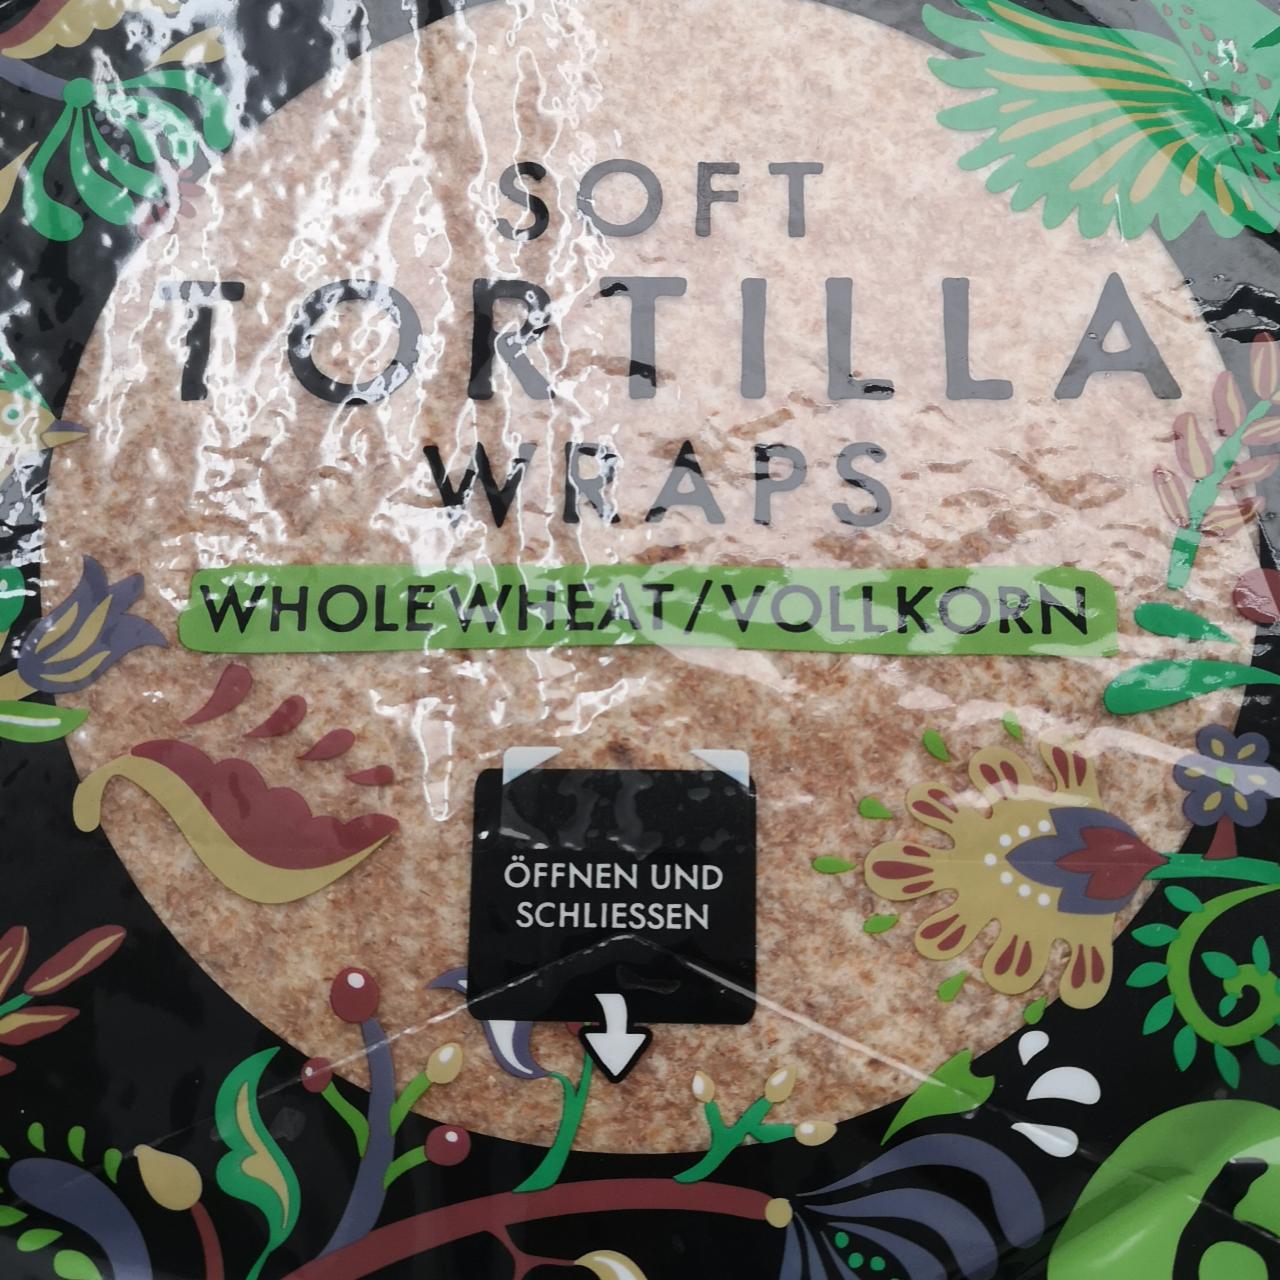 Фото - Soft Tortilla Wraps Whole Wheat La Fiesta Mexico